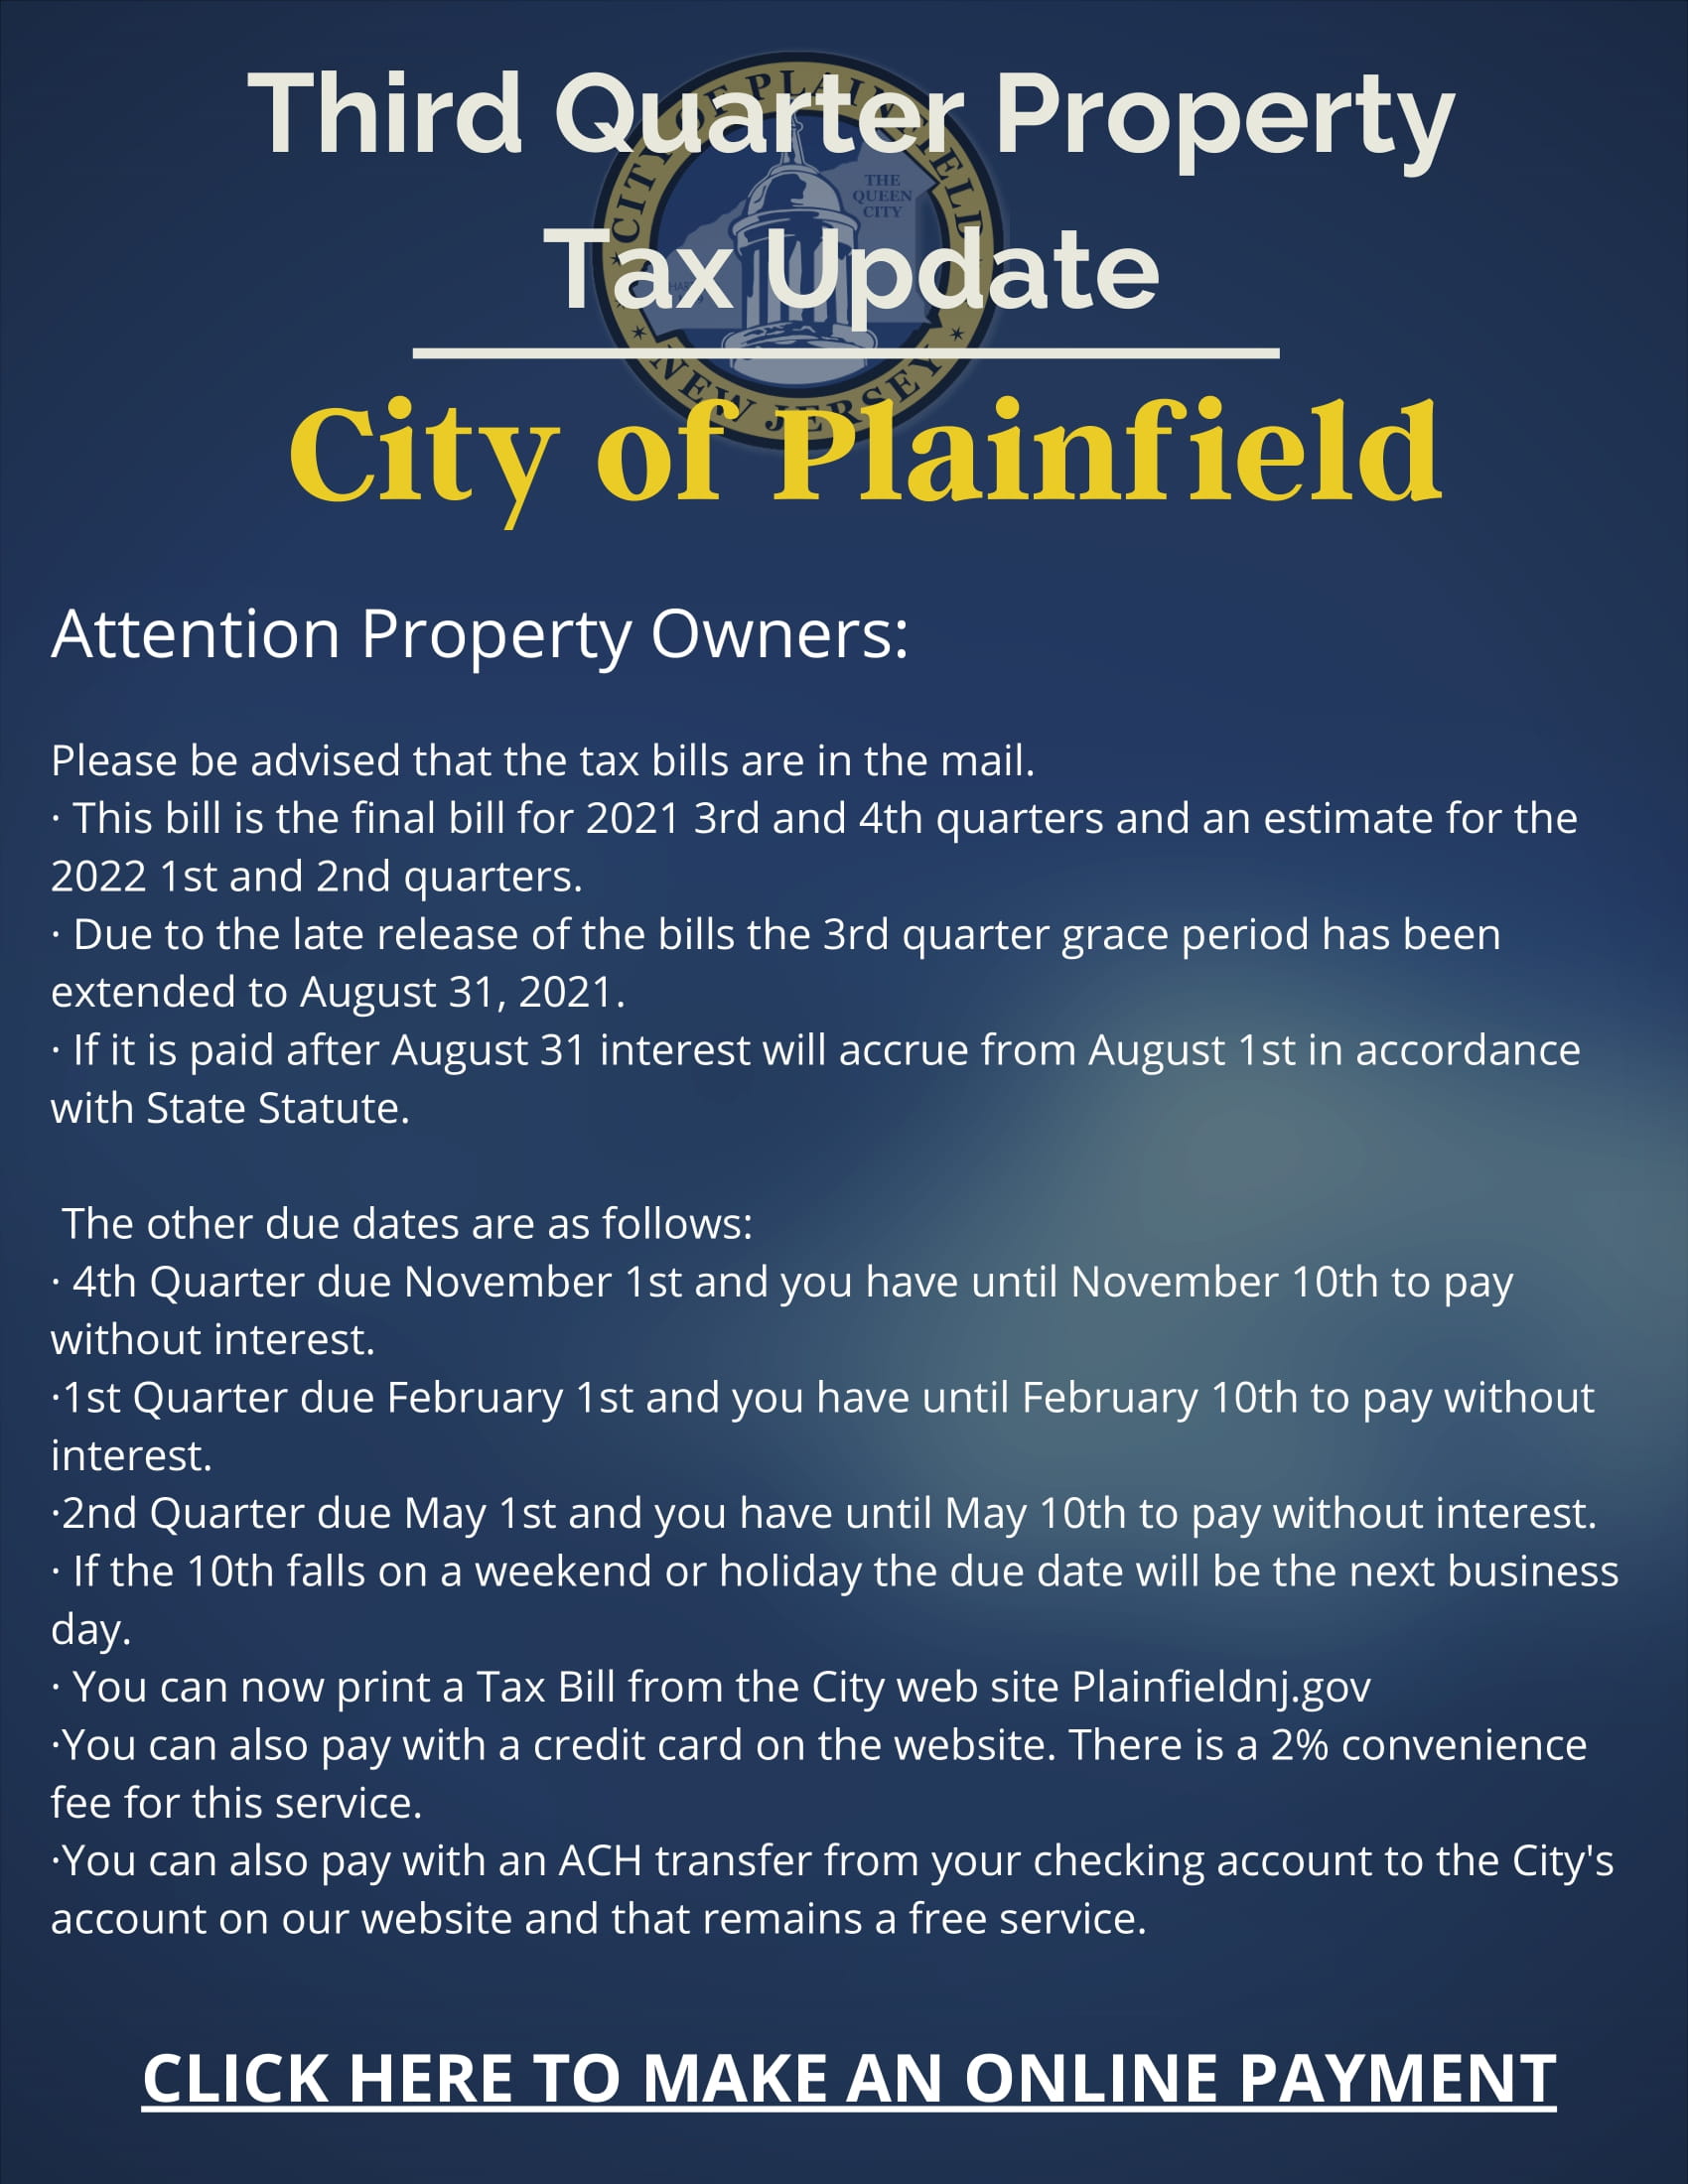 3rd Quarter Property Tax Update 2021 Flyer